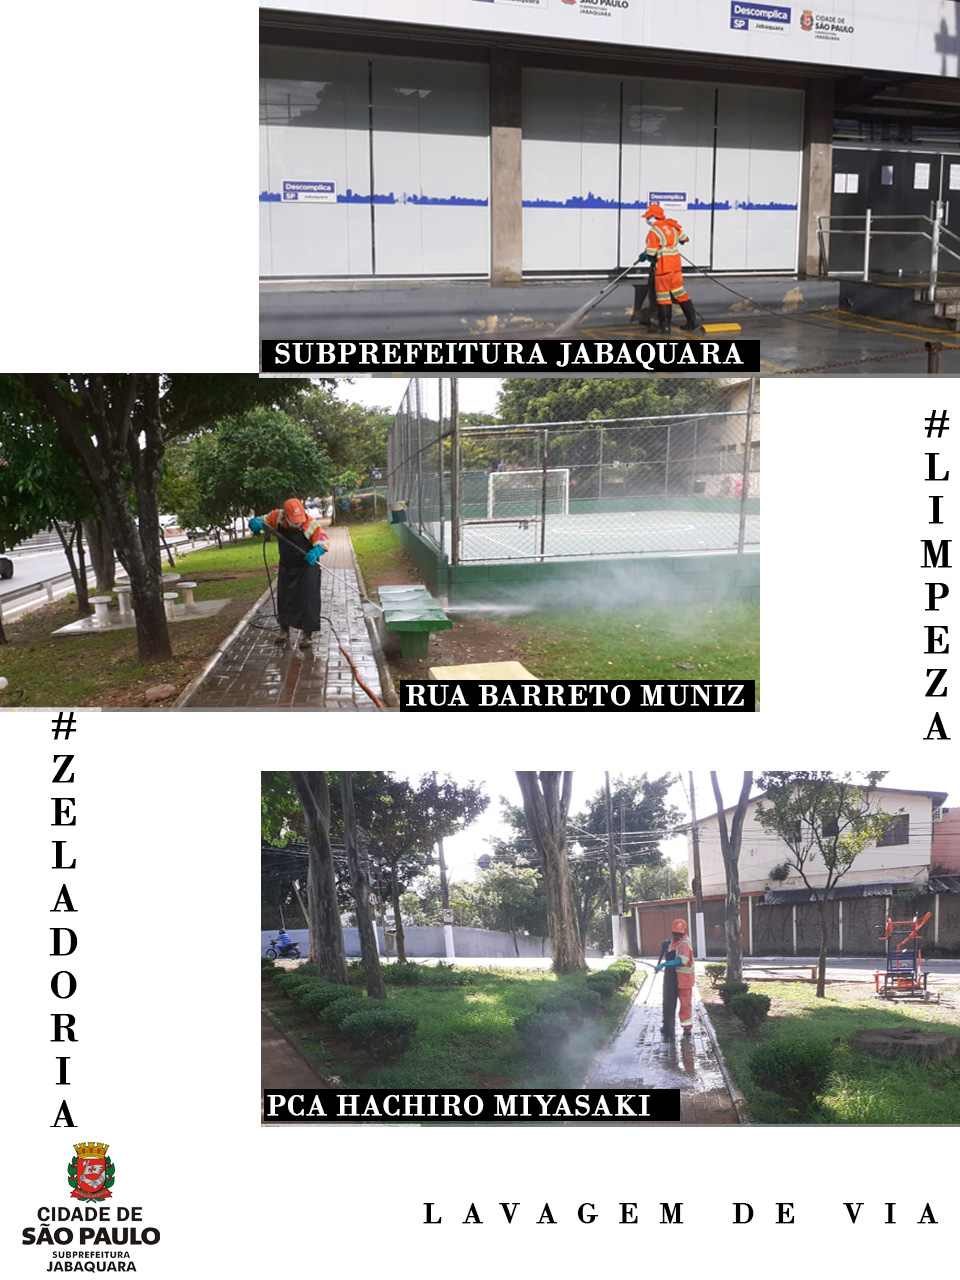 Três imagens mostrando a lavagem de locais públicos que são duas praças e a entrada da Subprefeitura Jabaquara por funcionários uniformizados na cor laranja na qual portam pressurizador que joga a água nos locais